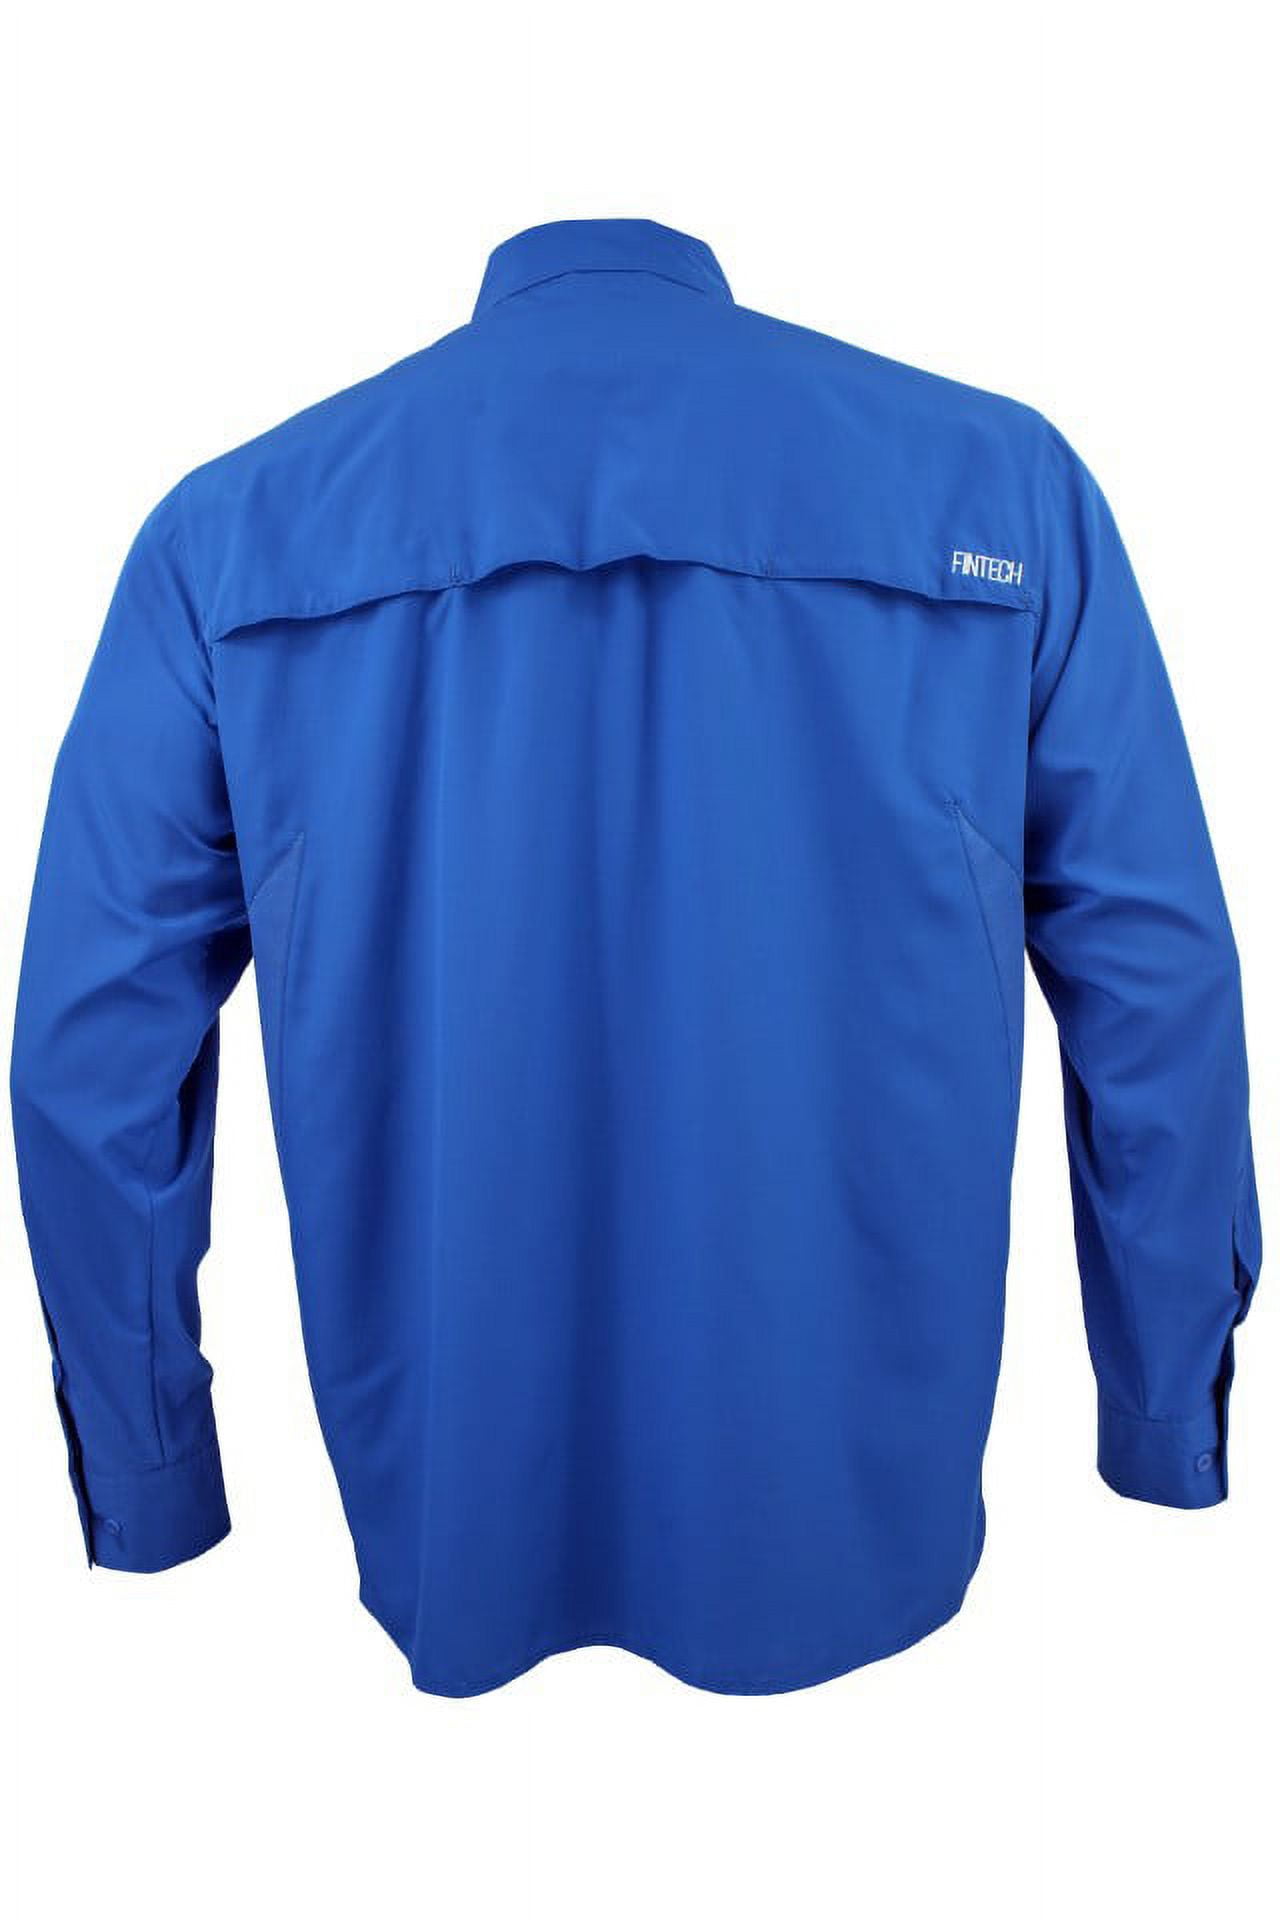 FinTech Long Sleeve Fishing Shirt for Men - Large 